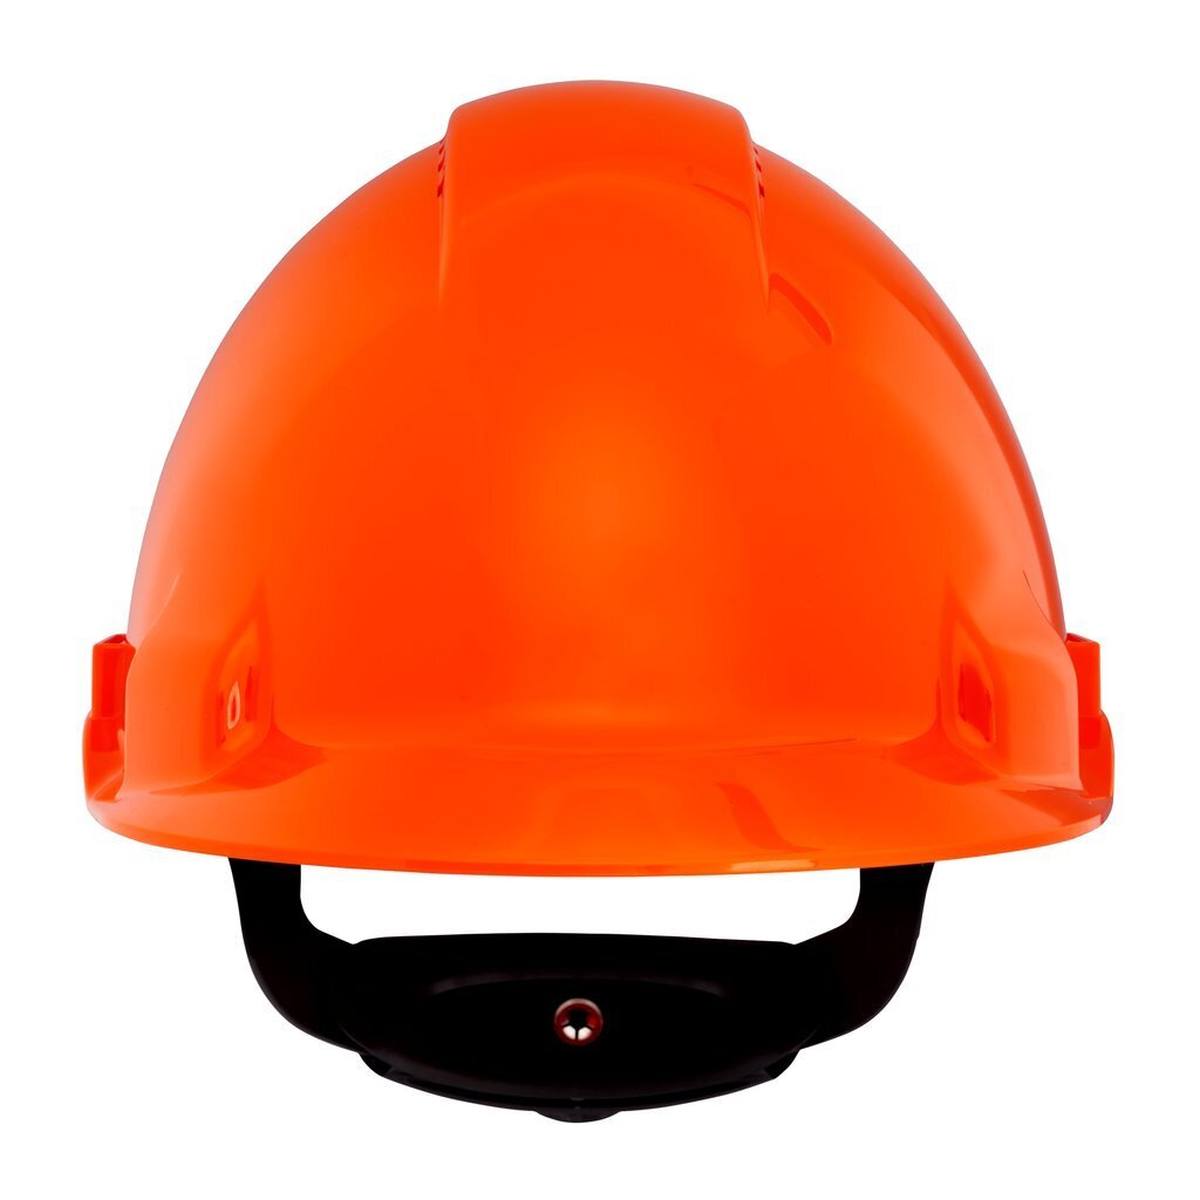 elmetto di sicurezza 3M G3000 G30NUO di colore arancione, ventilato, con uvicatore, cricchetto e cinturino in plastica per saldatura